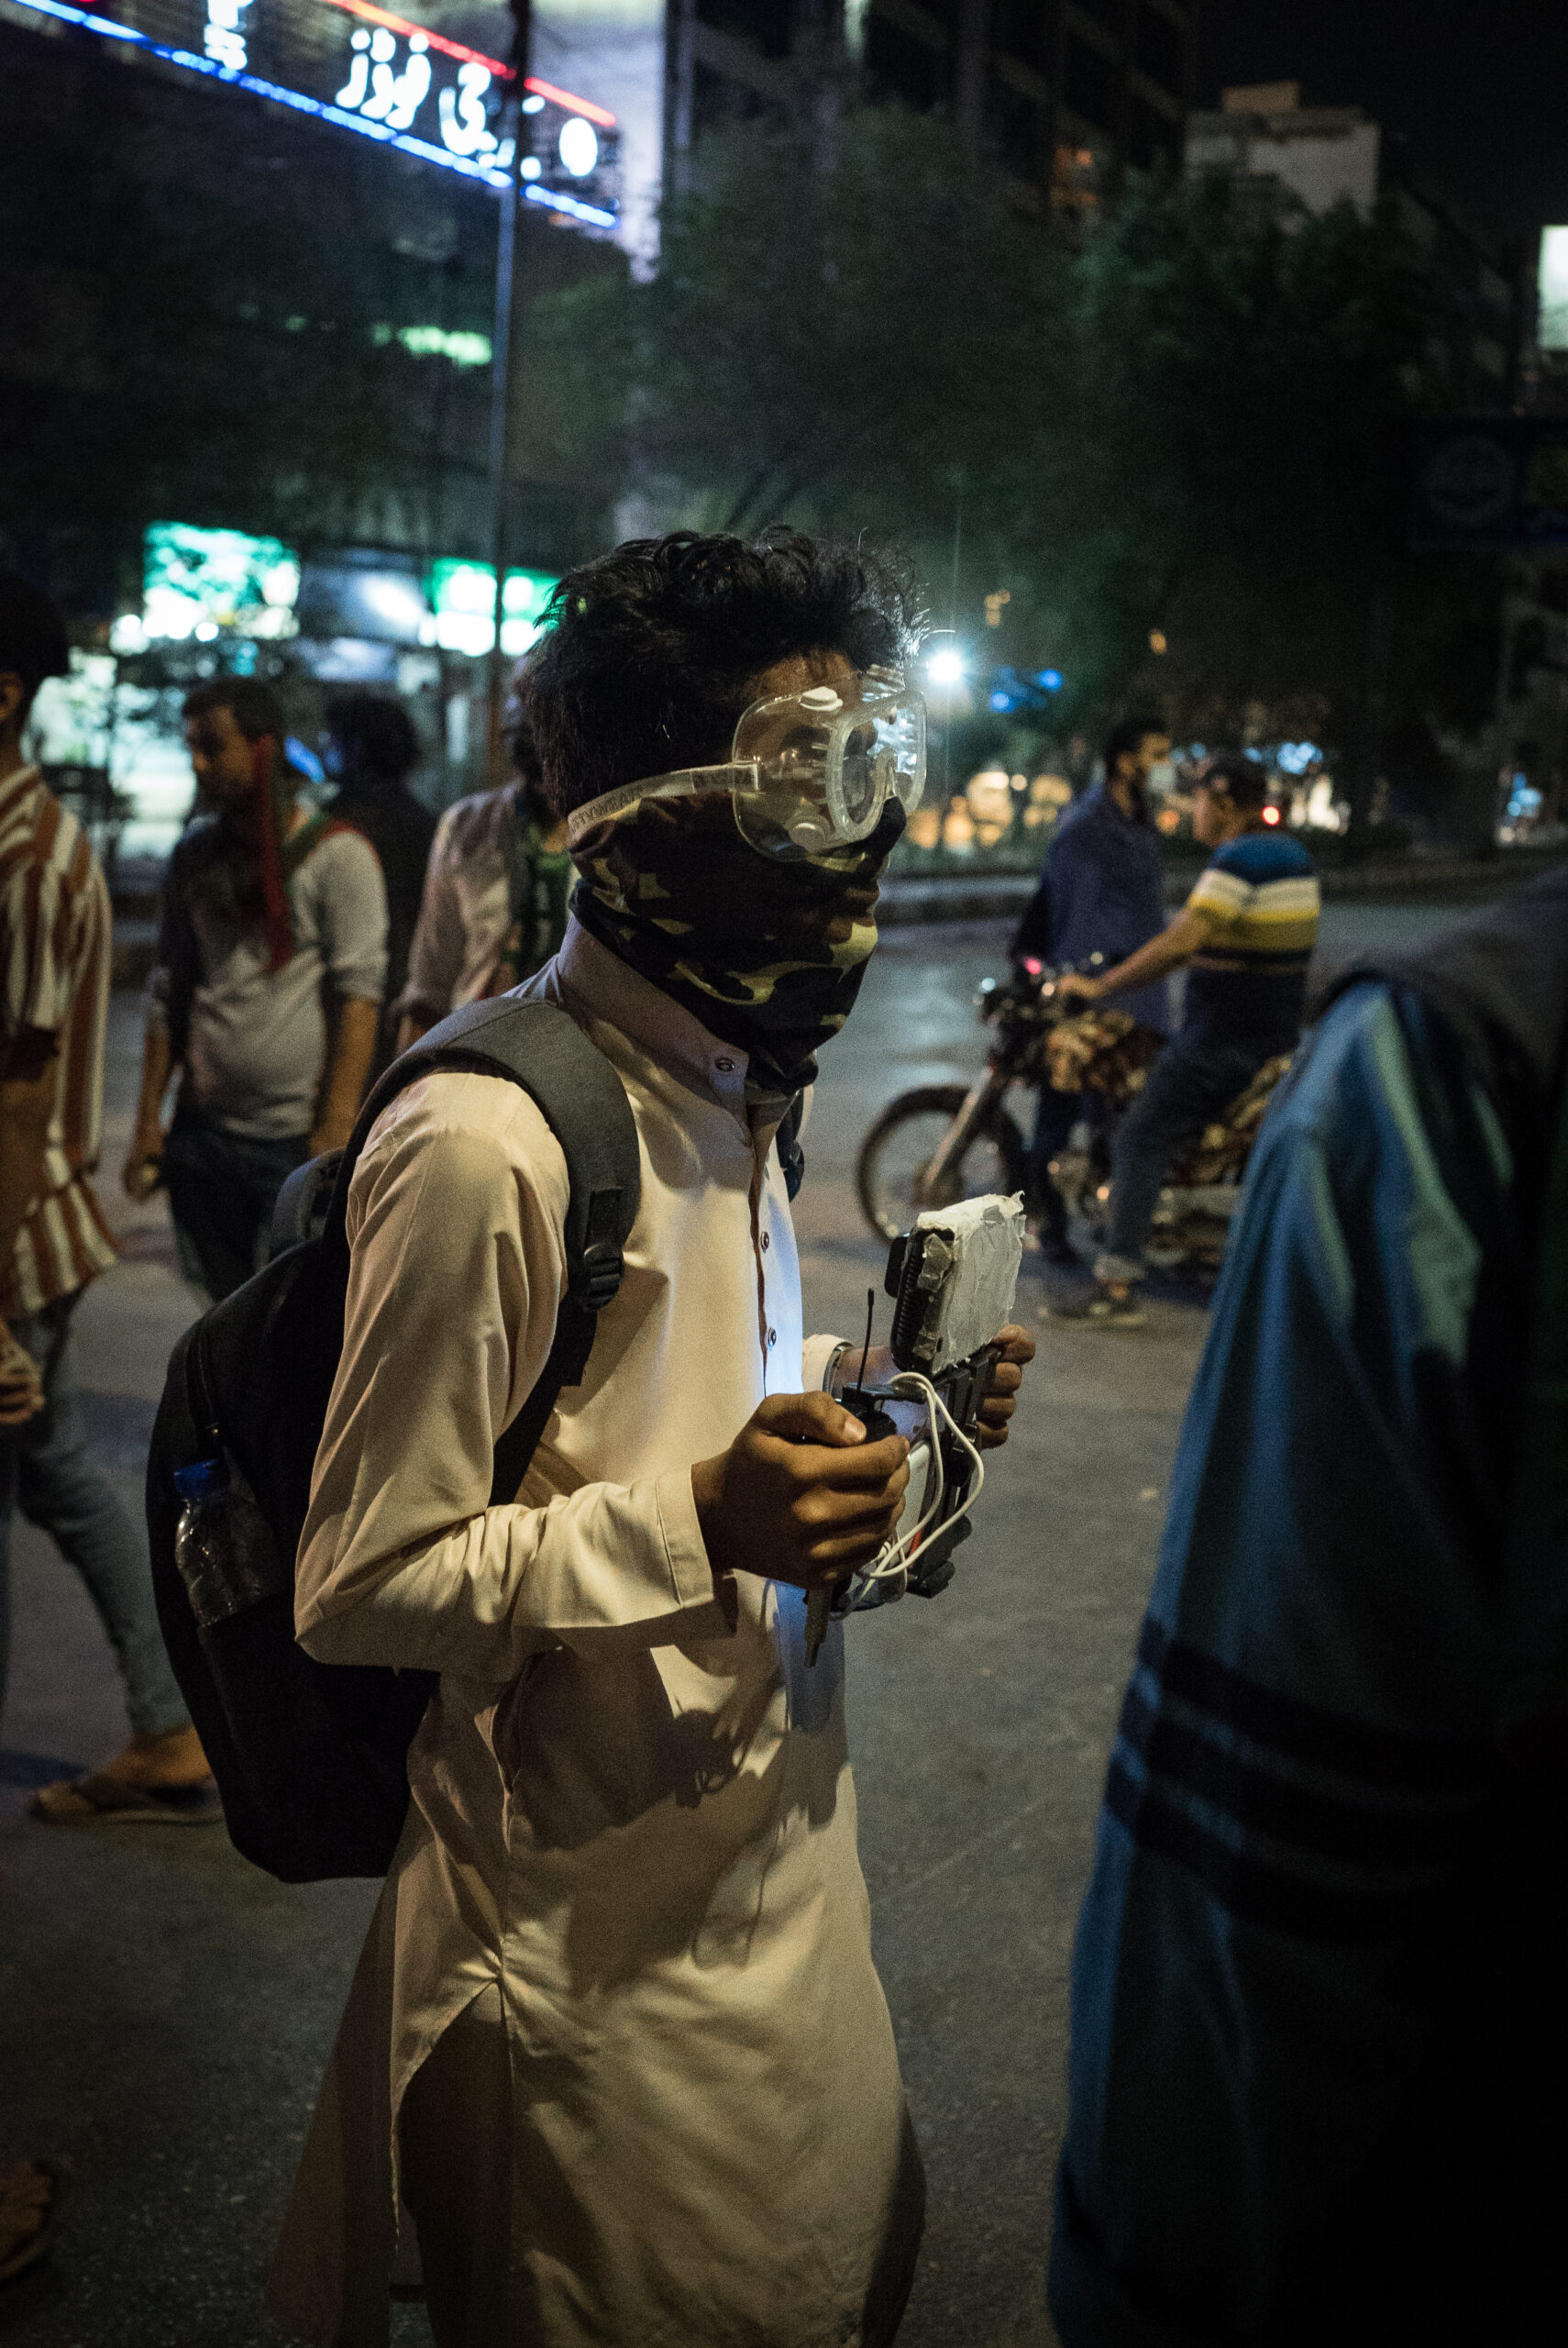 Partidario del PTI equipado para cubrir la protesta con su teléfono móvil, Karachi, 9 de mayo. © Laurent Gayer